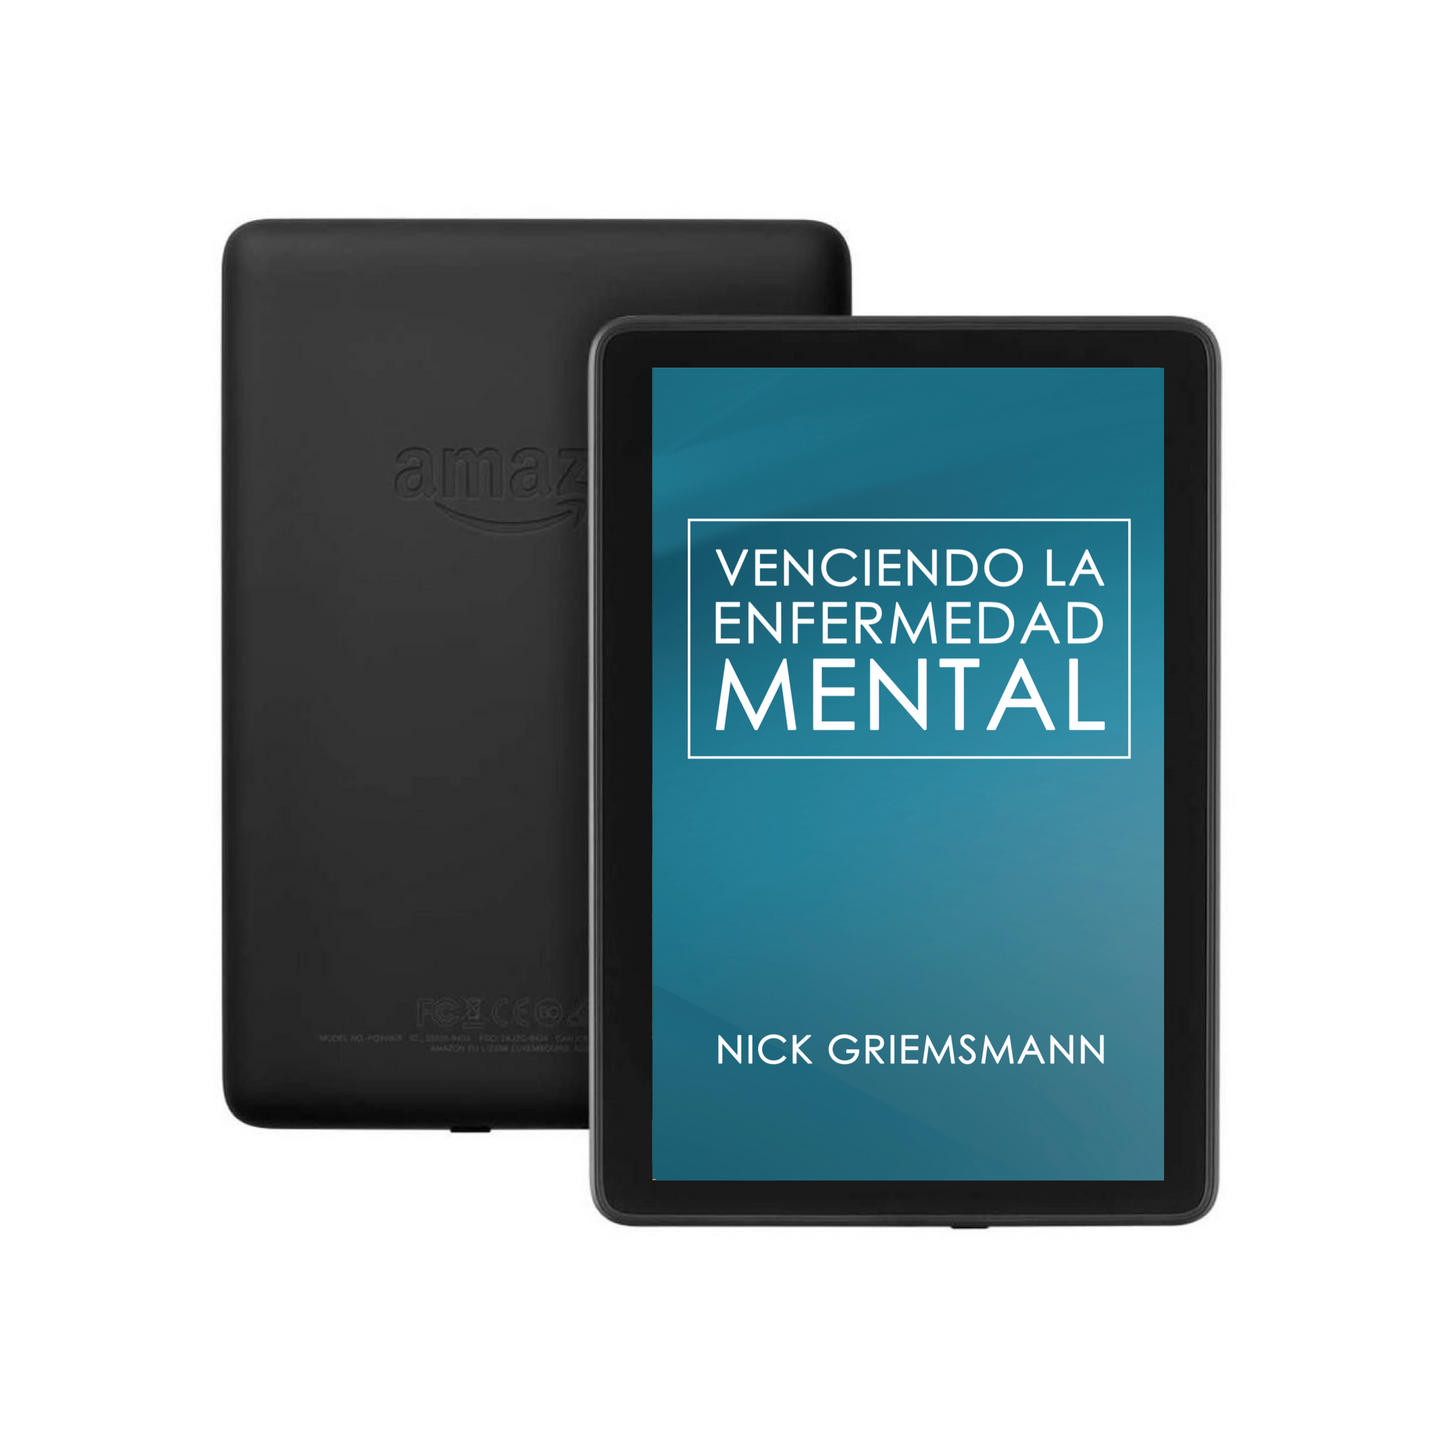 Venciendo la enfermedad mental - Spanish Edition (eBook)